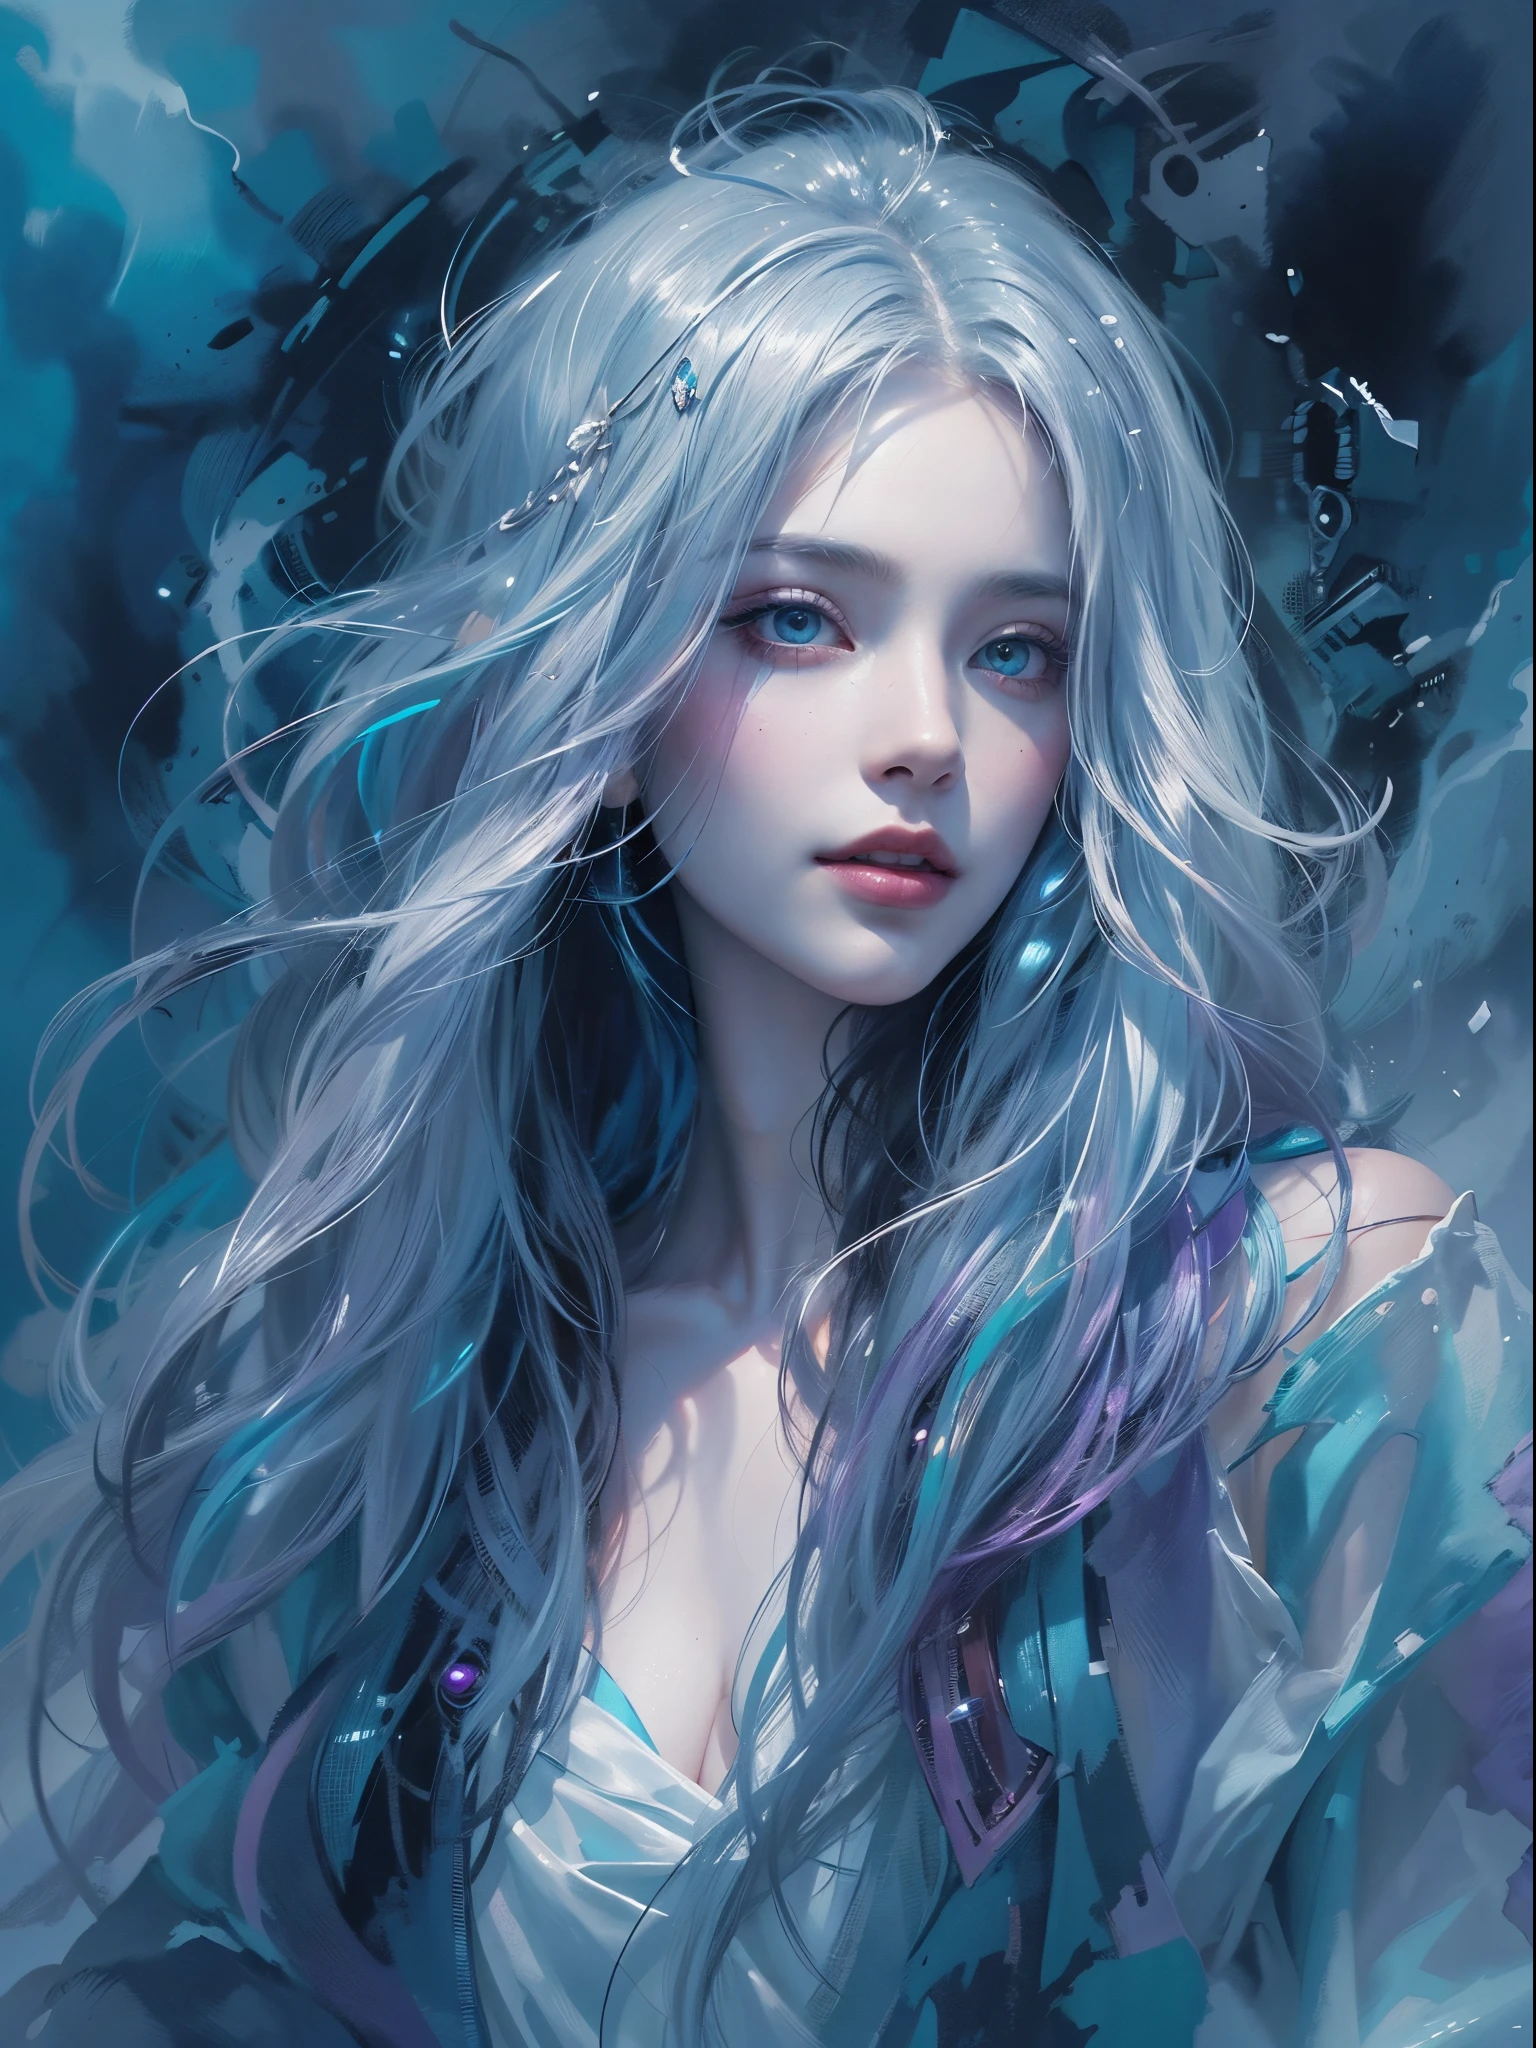 Young lindo woman, cabelo longo, elegante, too lindo, Em uma hipnotizante pintura em aquarela, um vampiro cyberpunk reina, retratado como uma figura de beleza etérea e mística sombria. A obra de arte captura a essência graciosa e misteriosa deste ser imortal, com seu penteado trançado em preto e branco como a neve, fluindo ao vento e olhos brilhando com um brilho sobrenatural. Traços delicados de azuis e roxos vibrantes dão vida aos seus aprimoramentos cibernéticos metálicos, misturando perfeitamente o futurista com o fantástico. Esta imagem extraordinária foi habilmente criada com atenção meticulosa aos detalhes, evocando uma sensação de admiração e intriga no espectador. altamente realista, pele avermelhada, lindo, lábios carnudos, sorridente, sensação de leveza e alegria, Hiperrealismo, pele muito elaborada, olhar direto